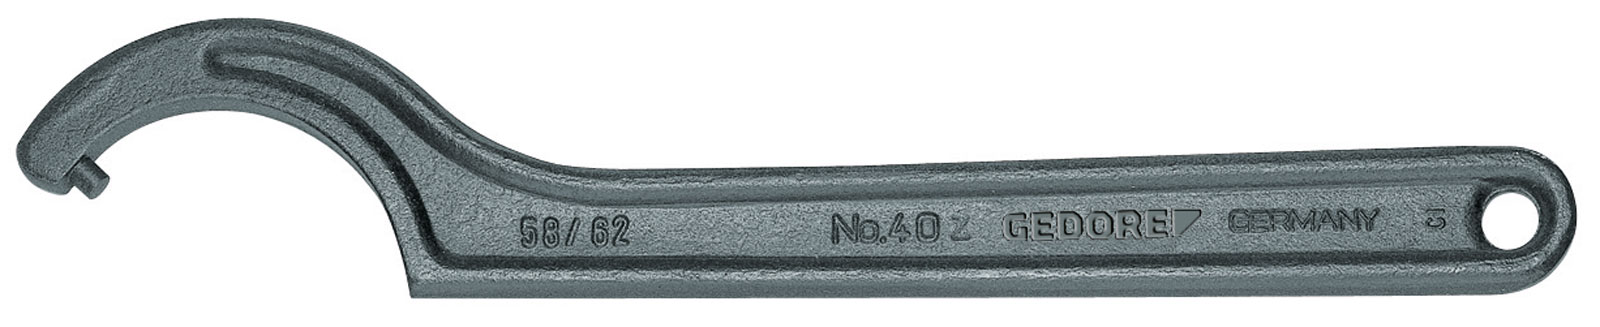 Bild von 40 Z 80-90 Hakenschlüssel, DIN 1810 Form B, 80-90 mm